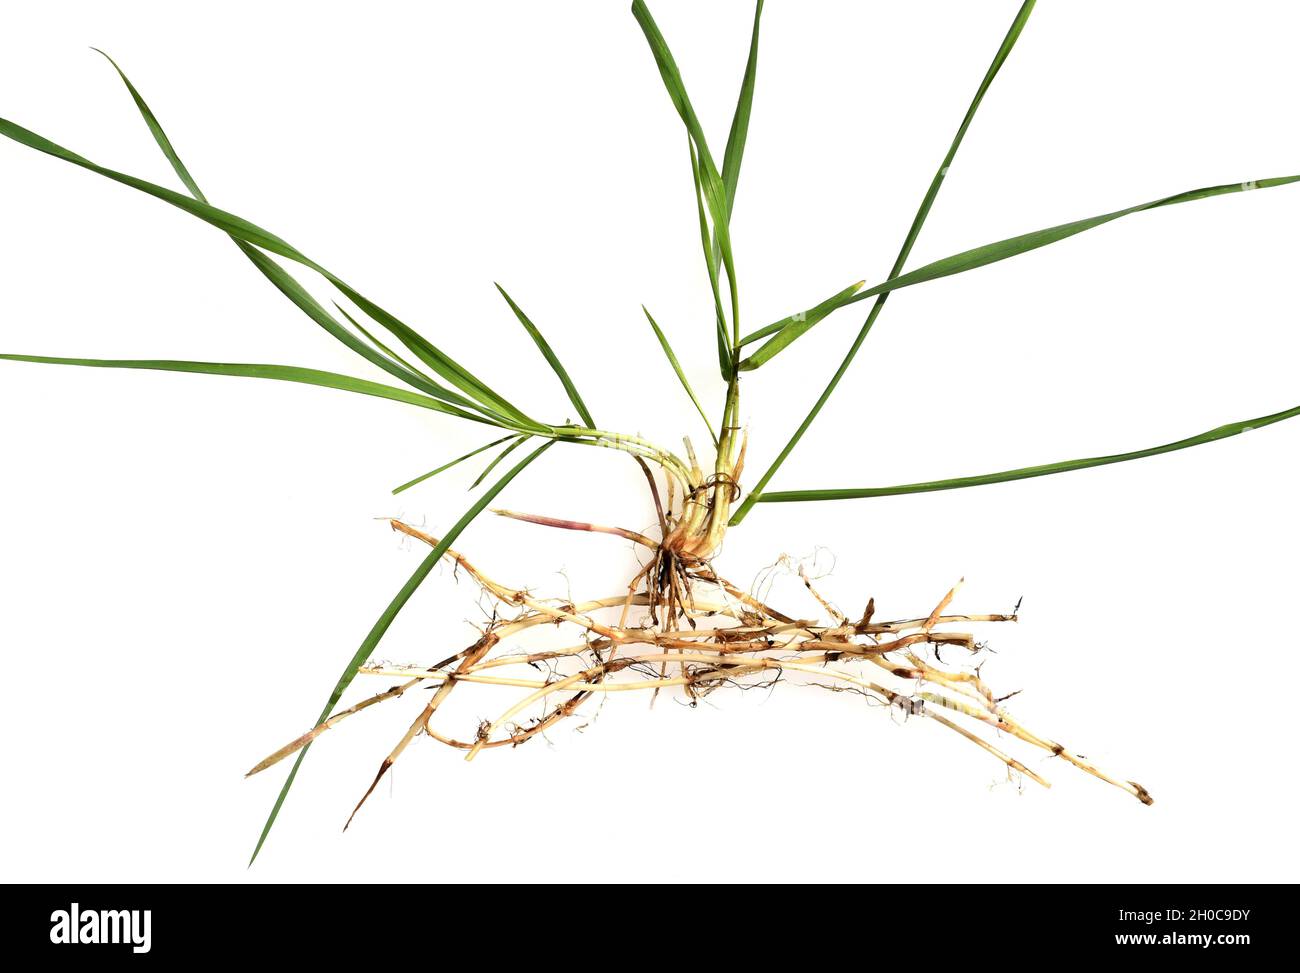 Quecke, Agropyron repens ist eine wichtige Heil- und Arzneipflanze. Quecke  ist ein Gras und Unkraut. Couch, Agropyron repens, is an important medicin  Stock Photo - Alamy